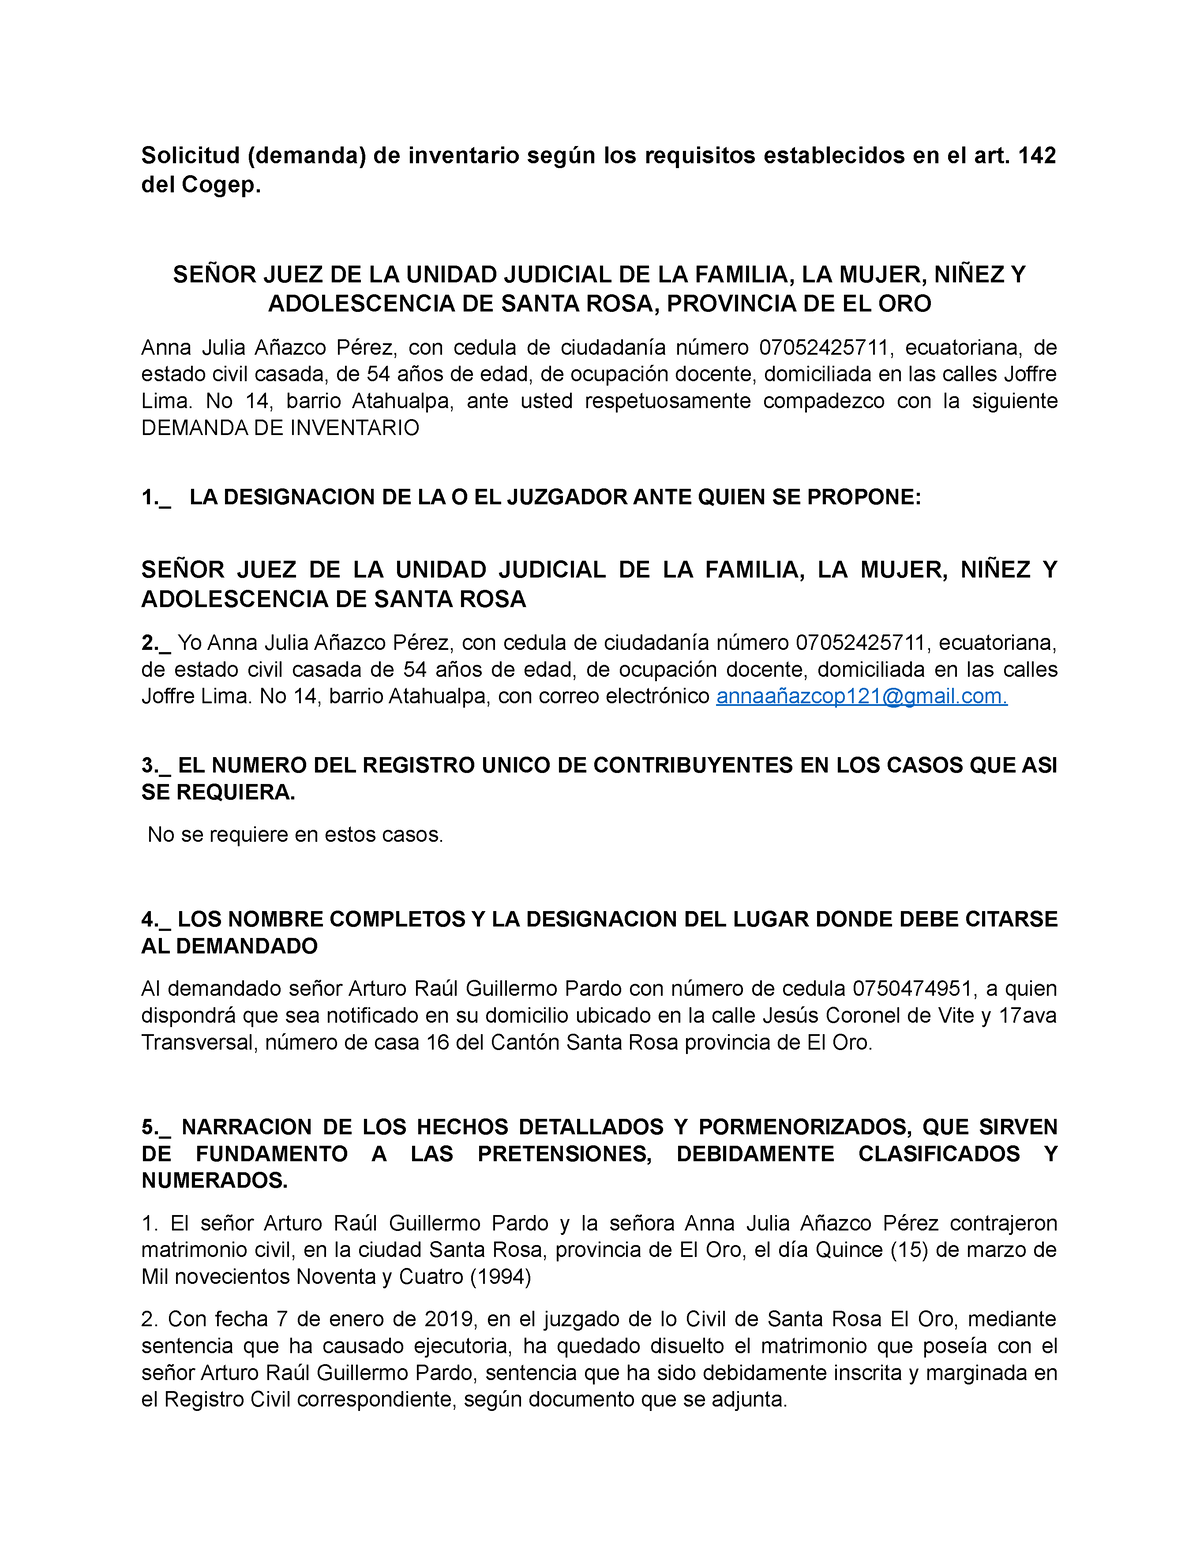 Solicitud Demanda De Inventario 142 Del Cogep SeÑor Juez De La Unidad Judicial De La 0005